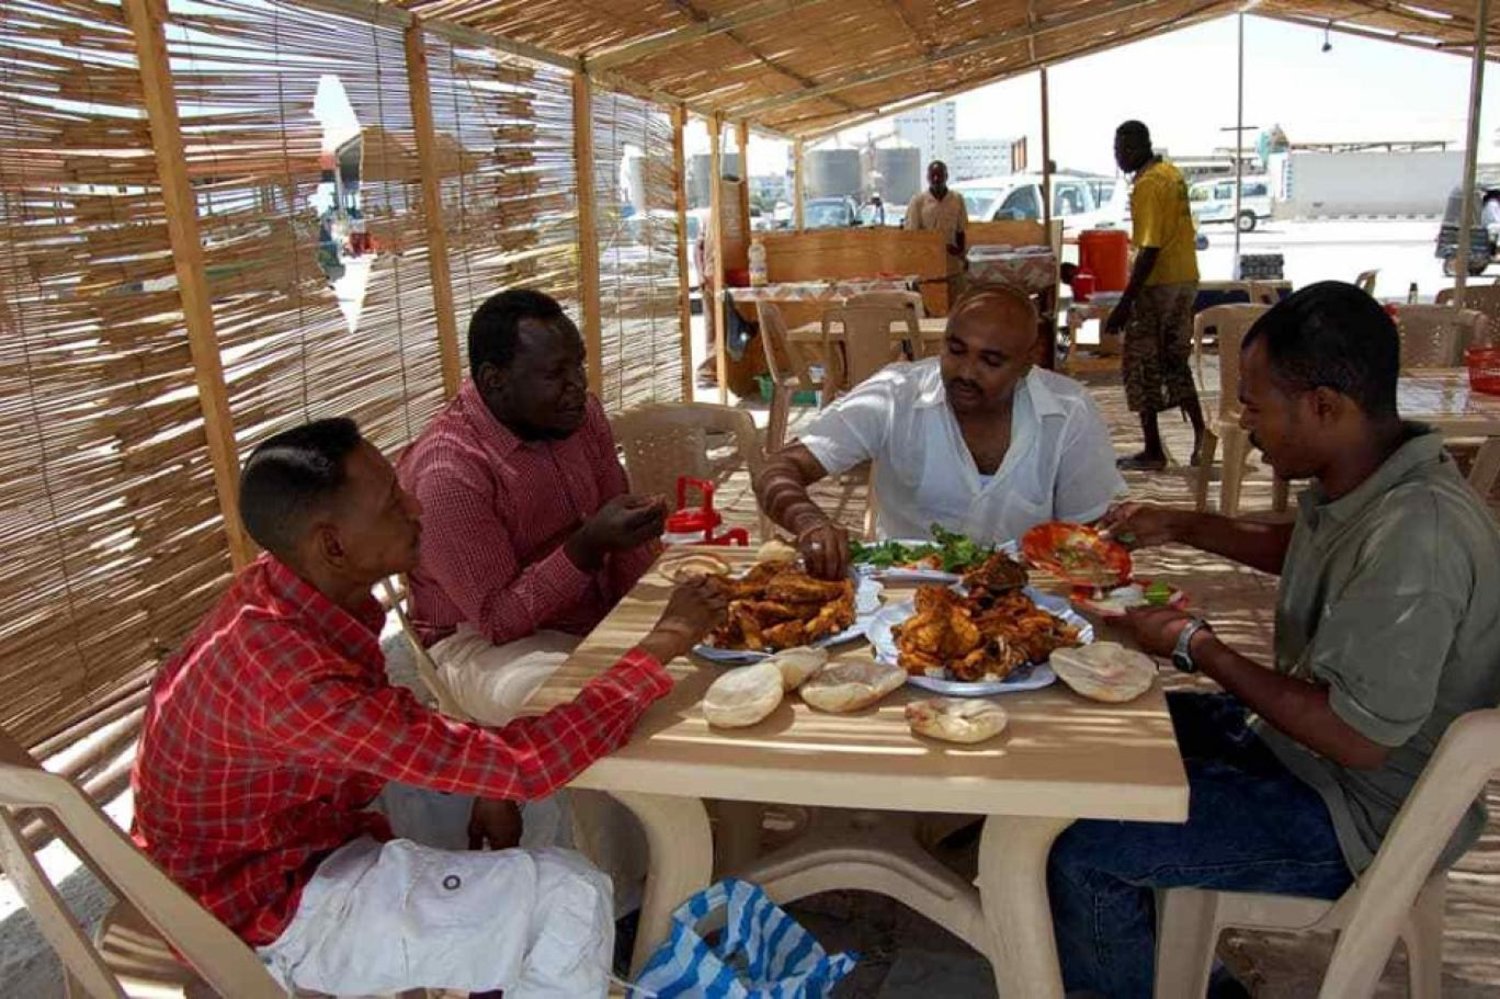 Hartum'daki savaşın yoğunlaşmasının ardından Kızıldeniz kıyısındaki Sakkala/İskele turistik restoranları popüler hale geldi (Hasan Hamid- Independent Arabia)